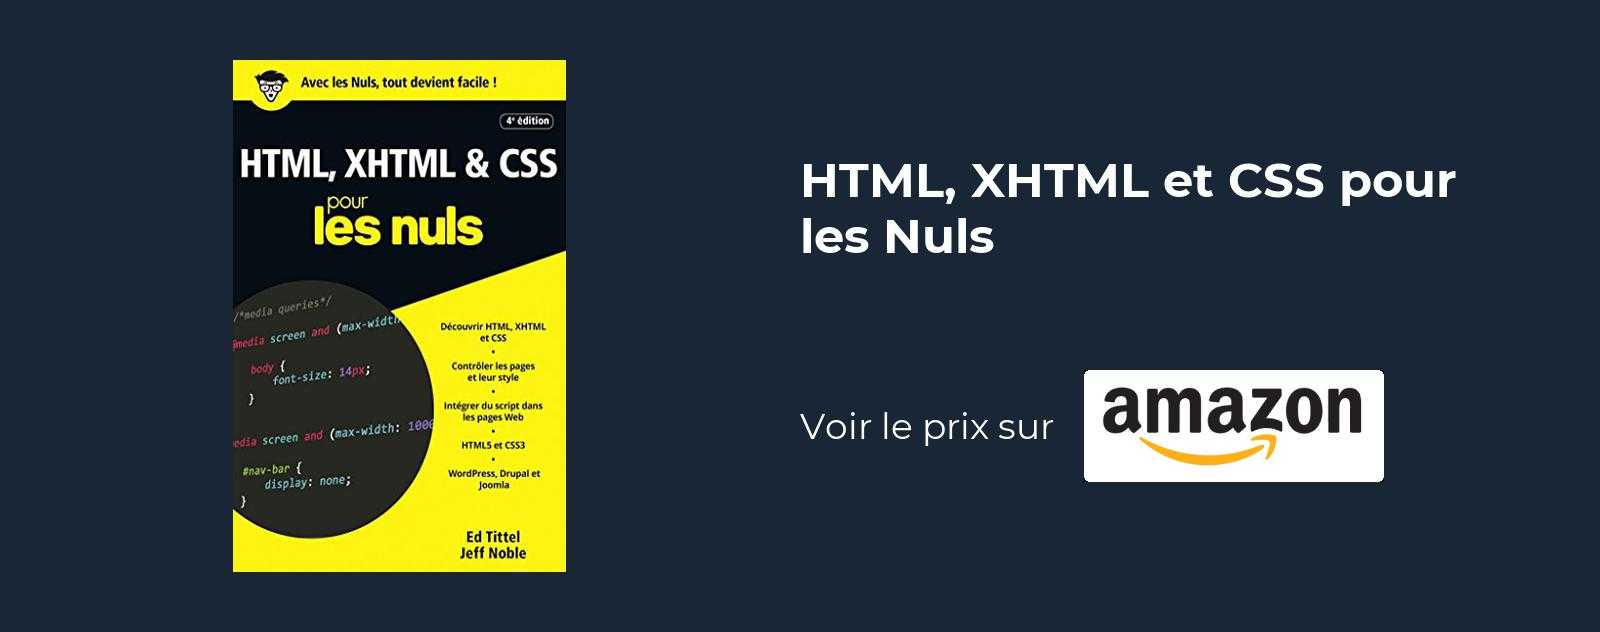 HTML, XHTML et CSS pour les Nuls